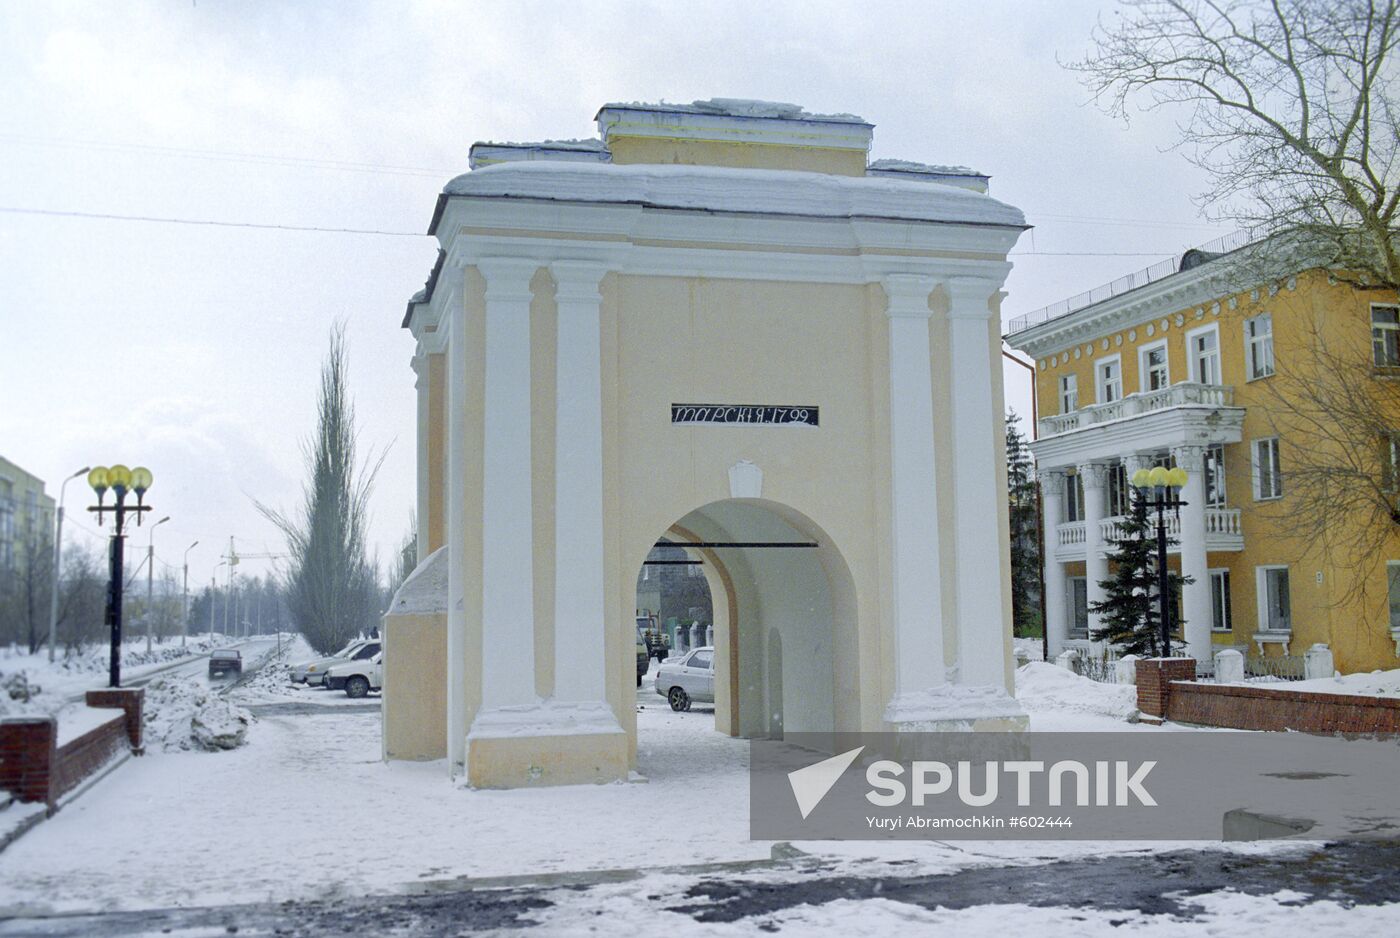 The Tarskiye Gates